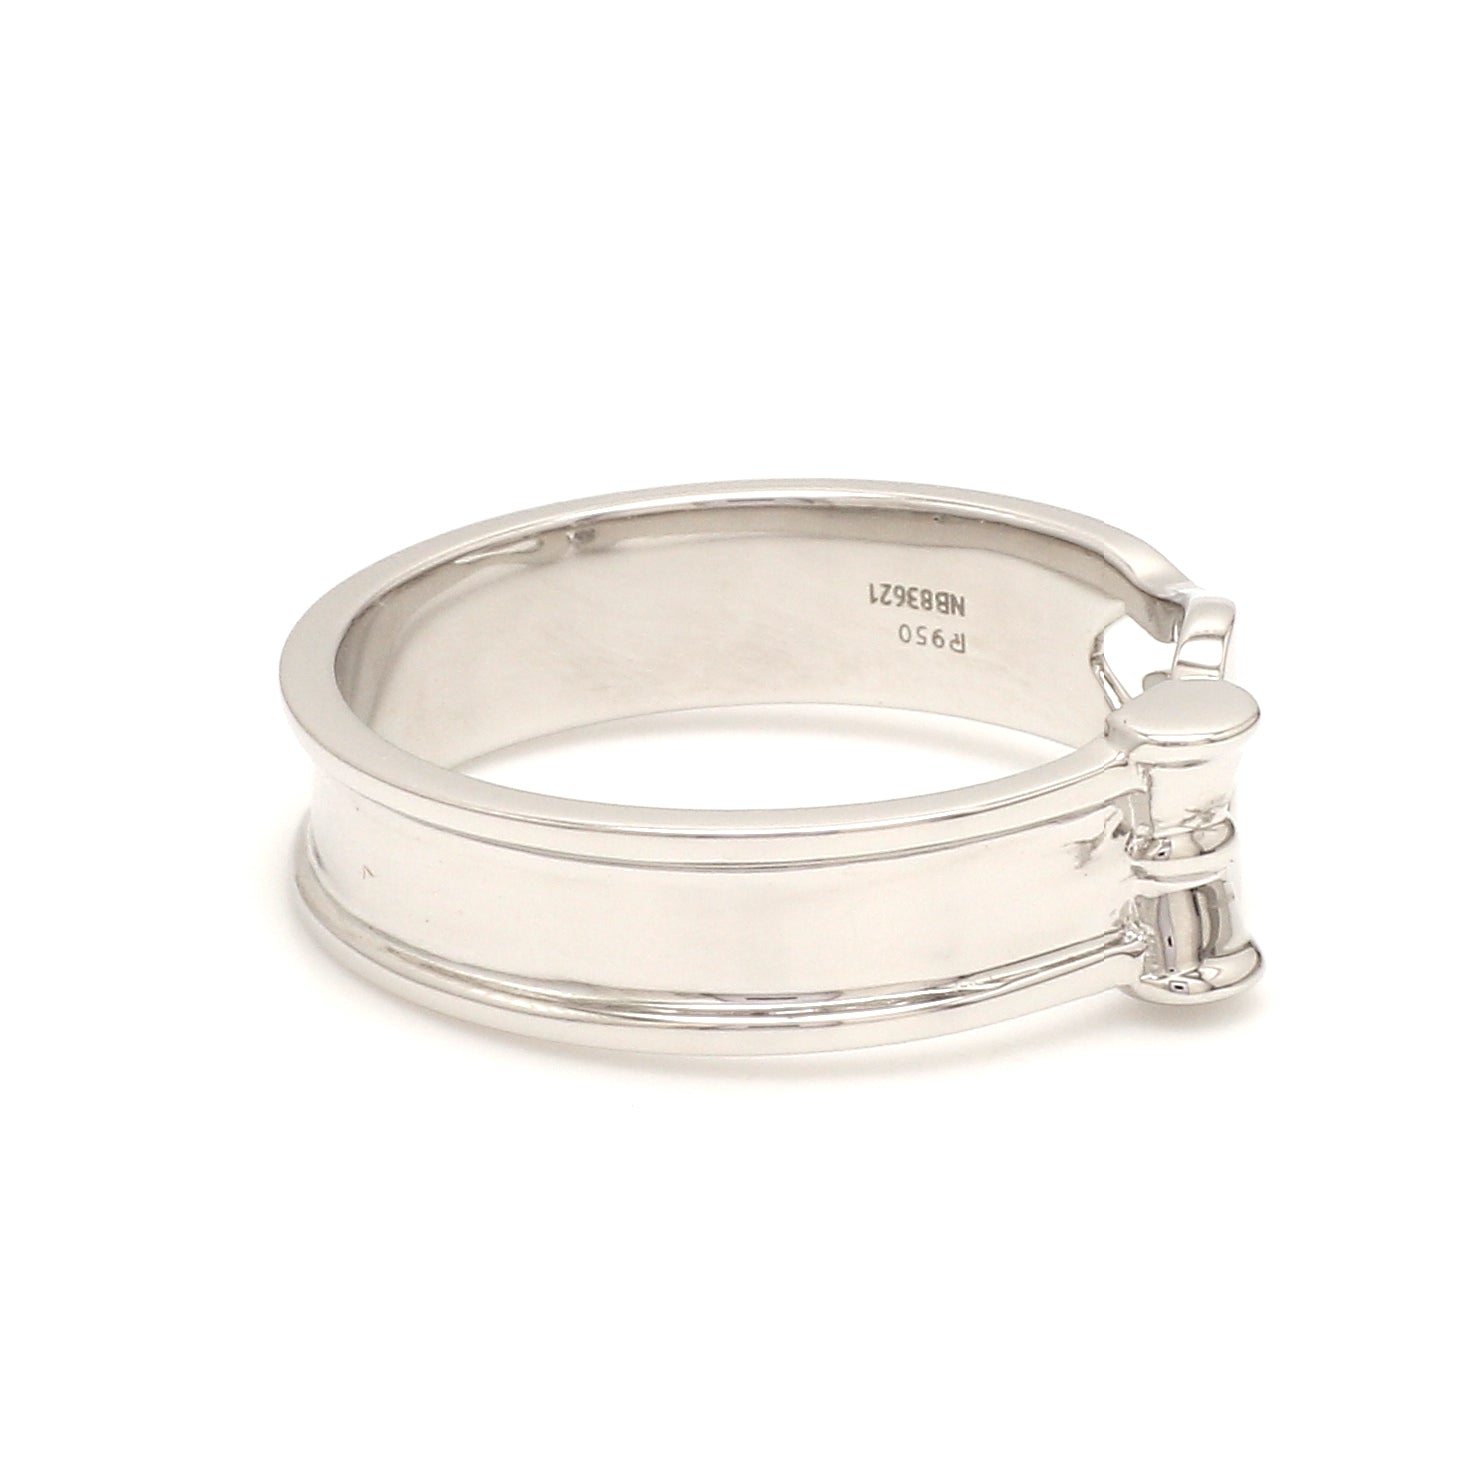 Platinum OM Trishul Ring for Men JL PT 1367